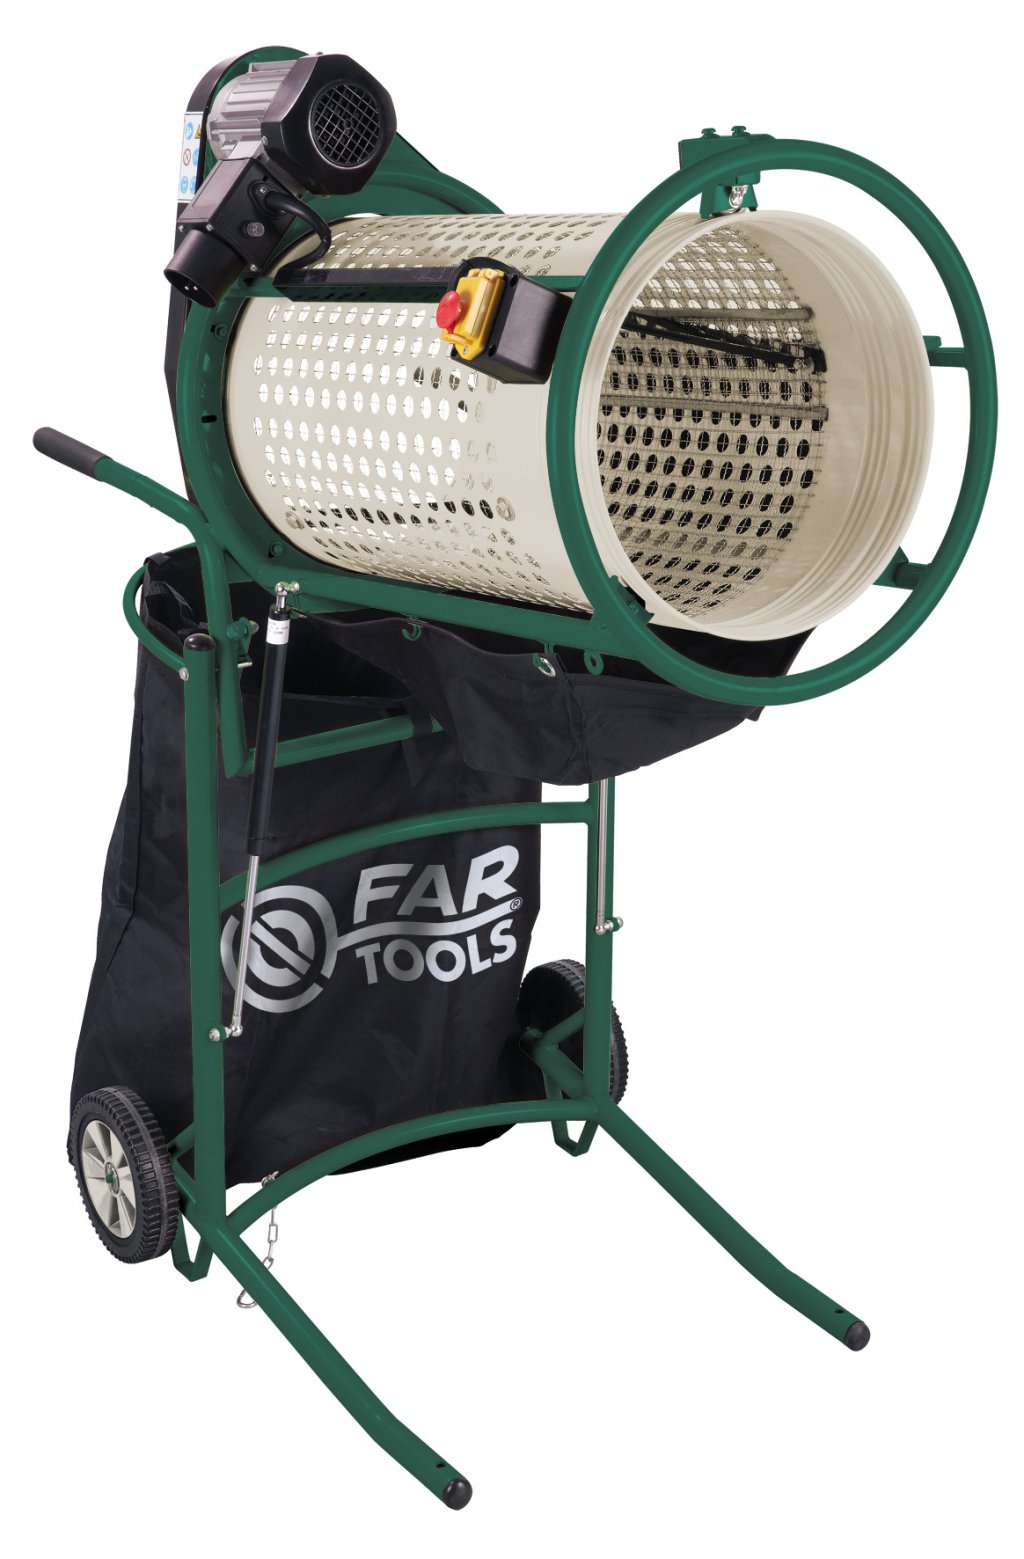 FarTools lance un tamis électrique RS 375 pour le compostage des